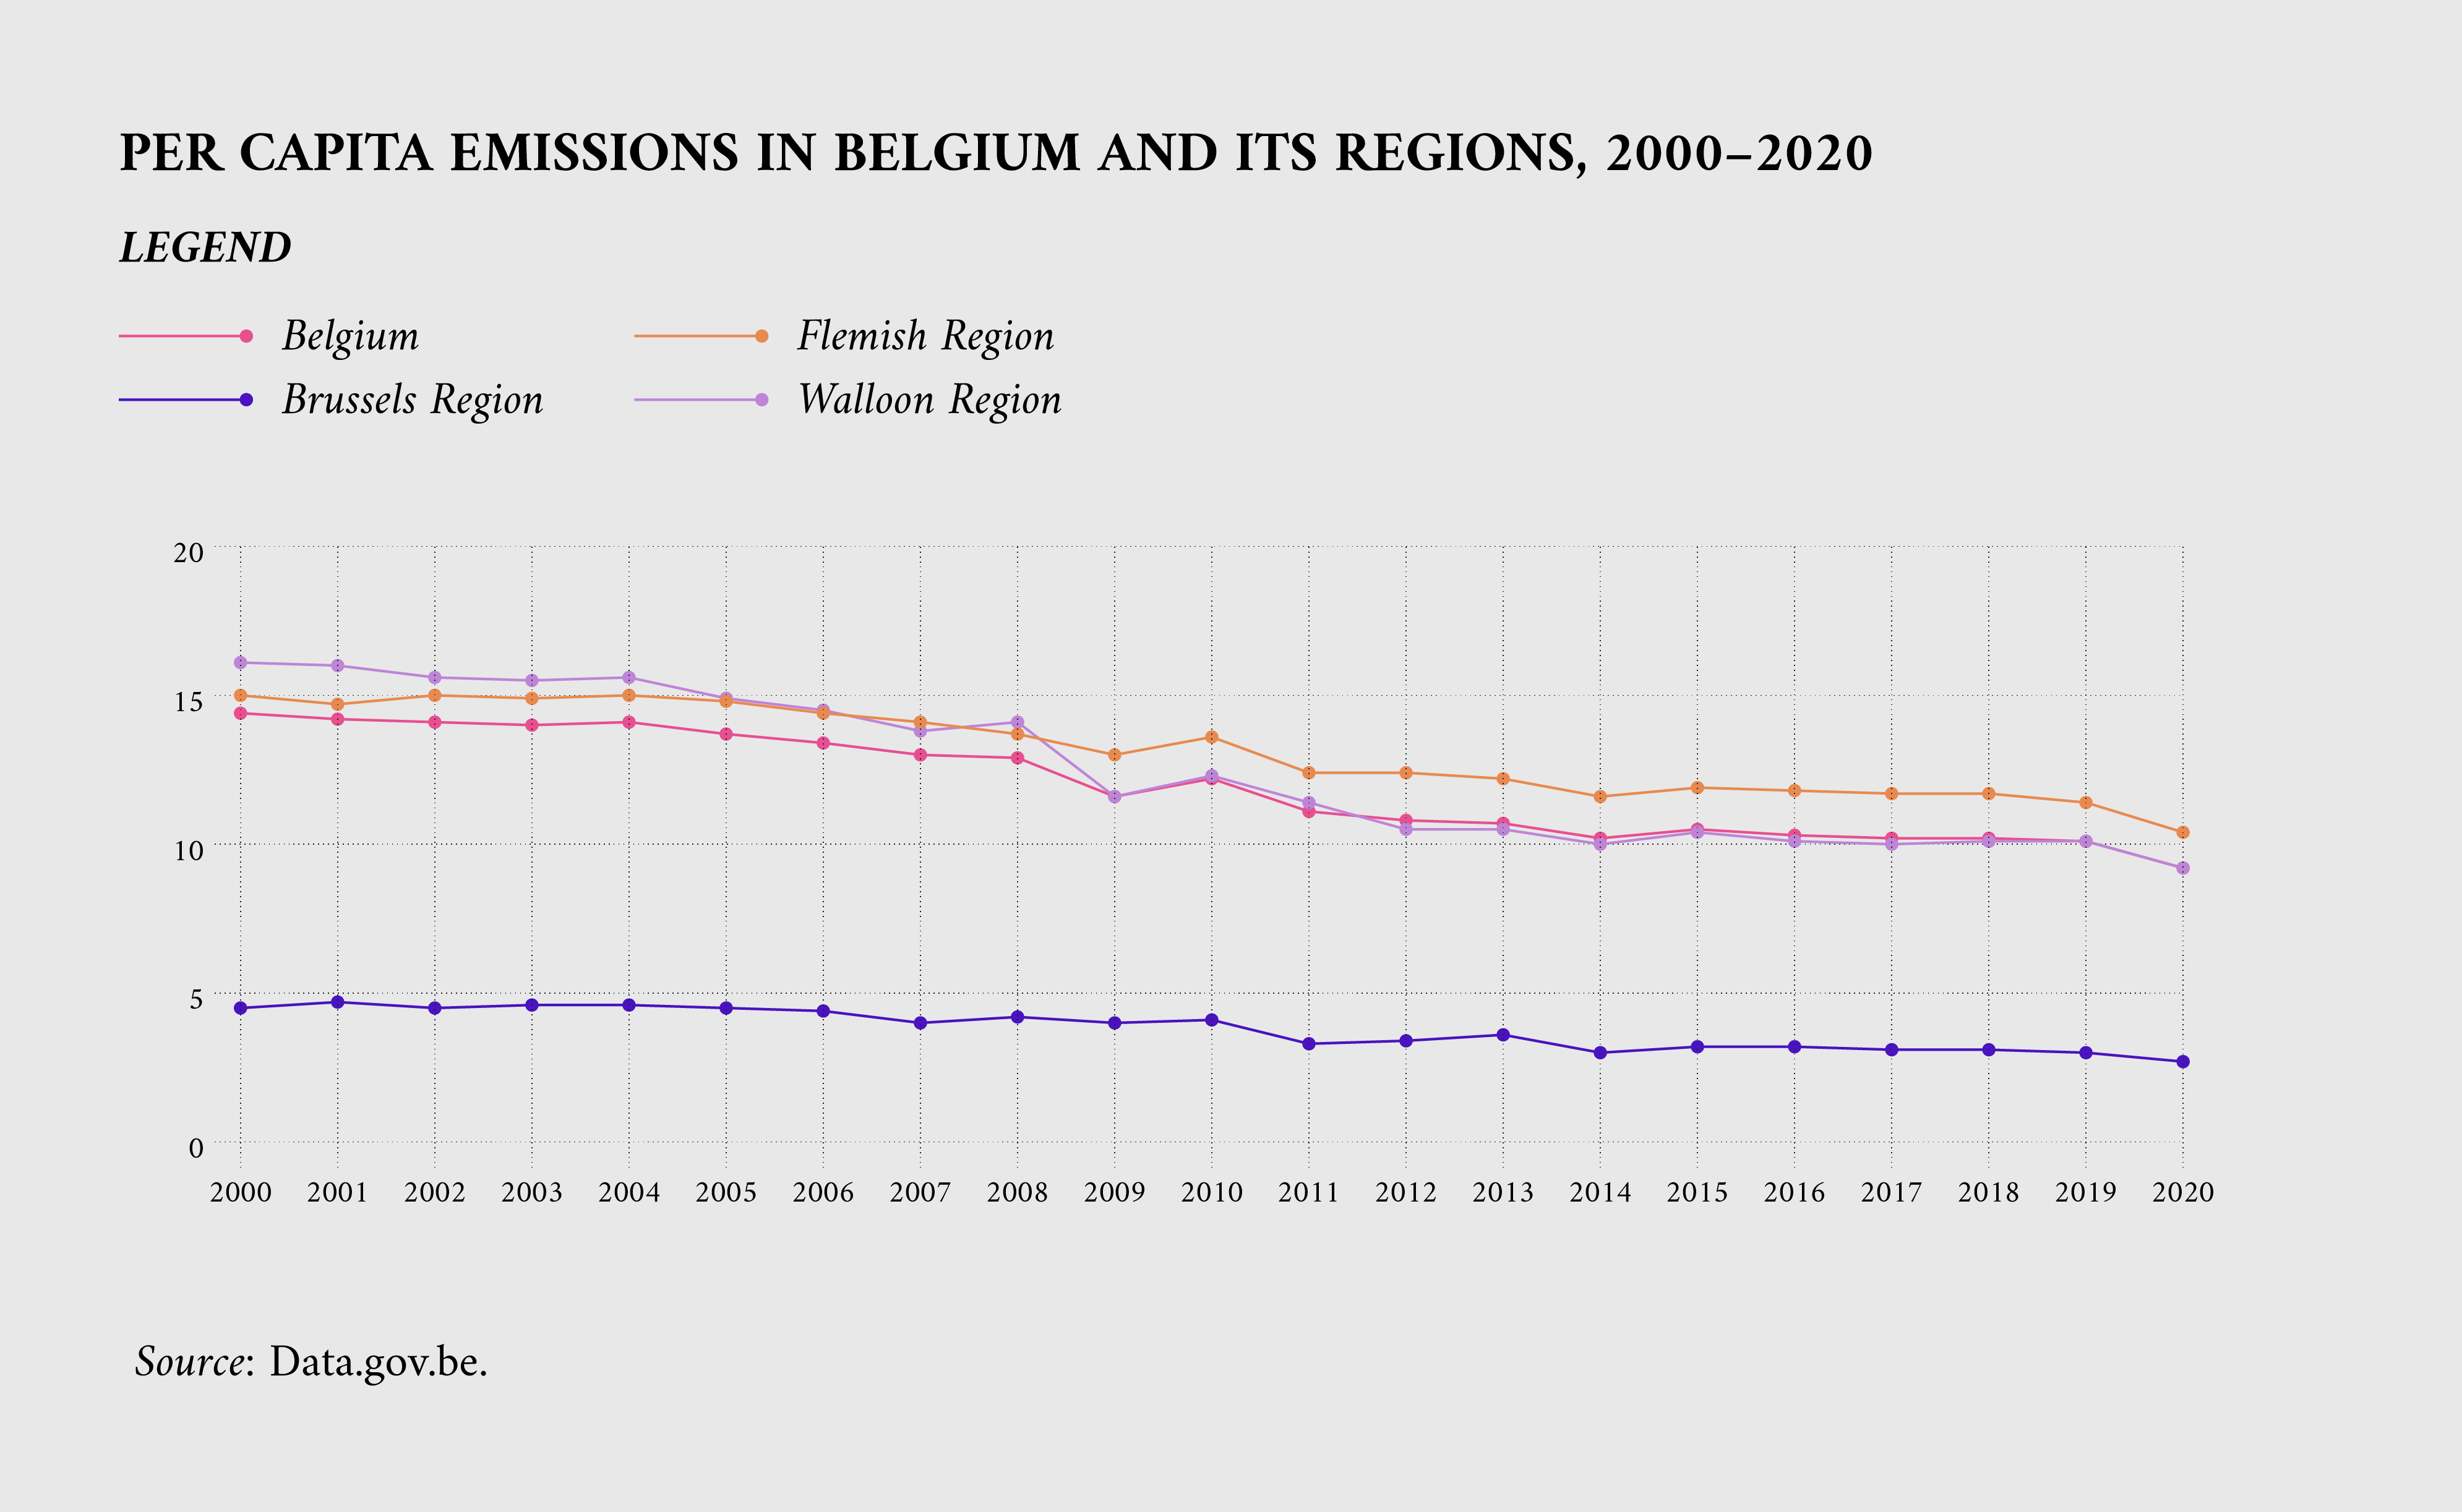 Per capita emissions in Belgium and its regions, 2000-2020